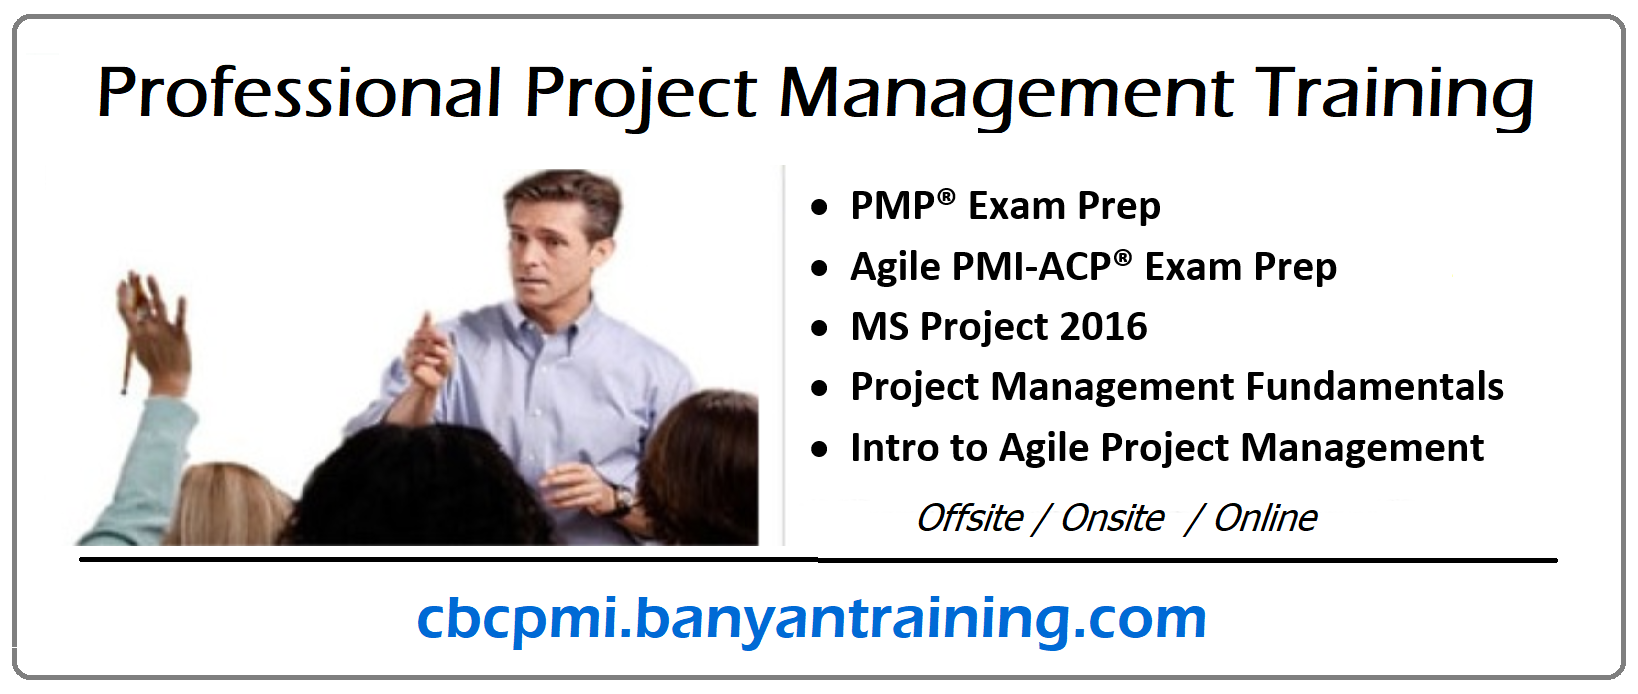 ProjectManagementTraining-cbcpmi-banyan.png